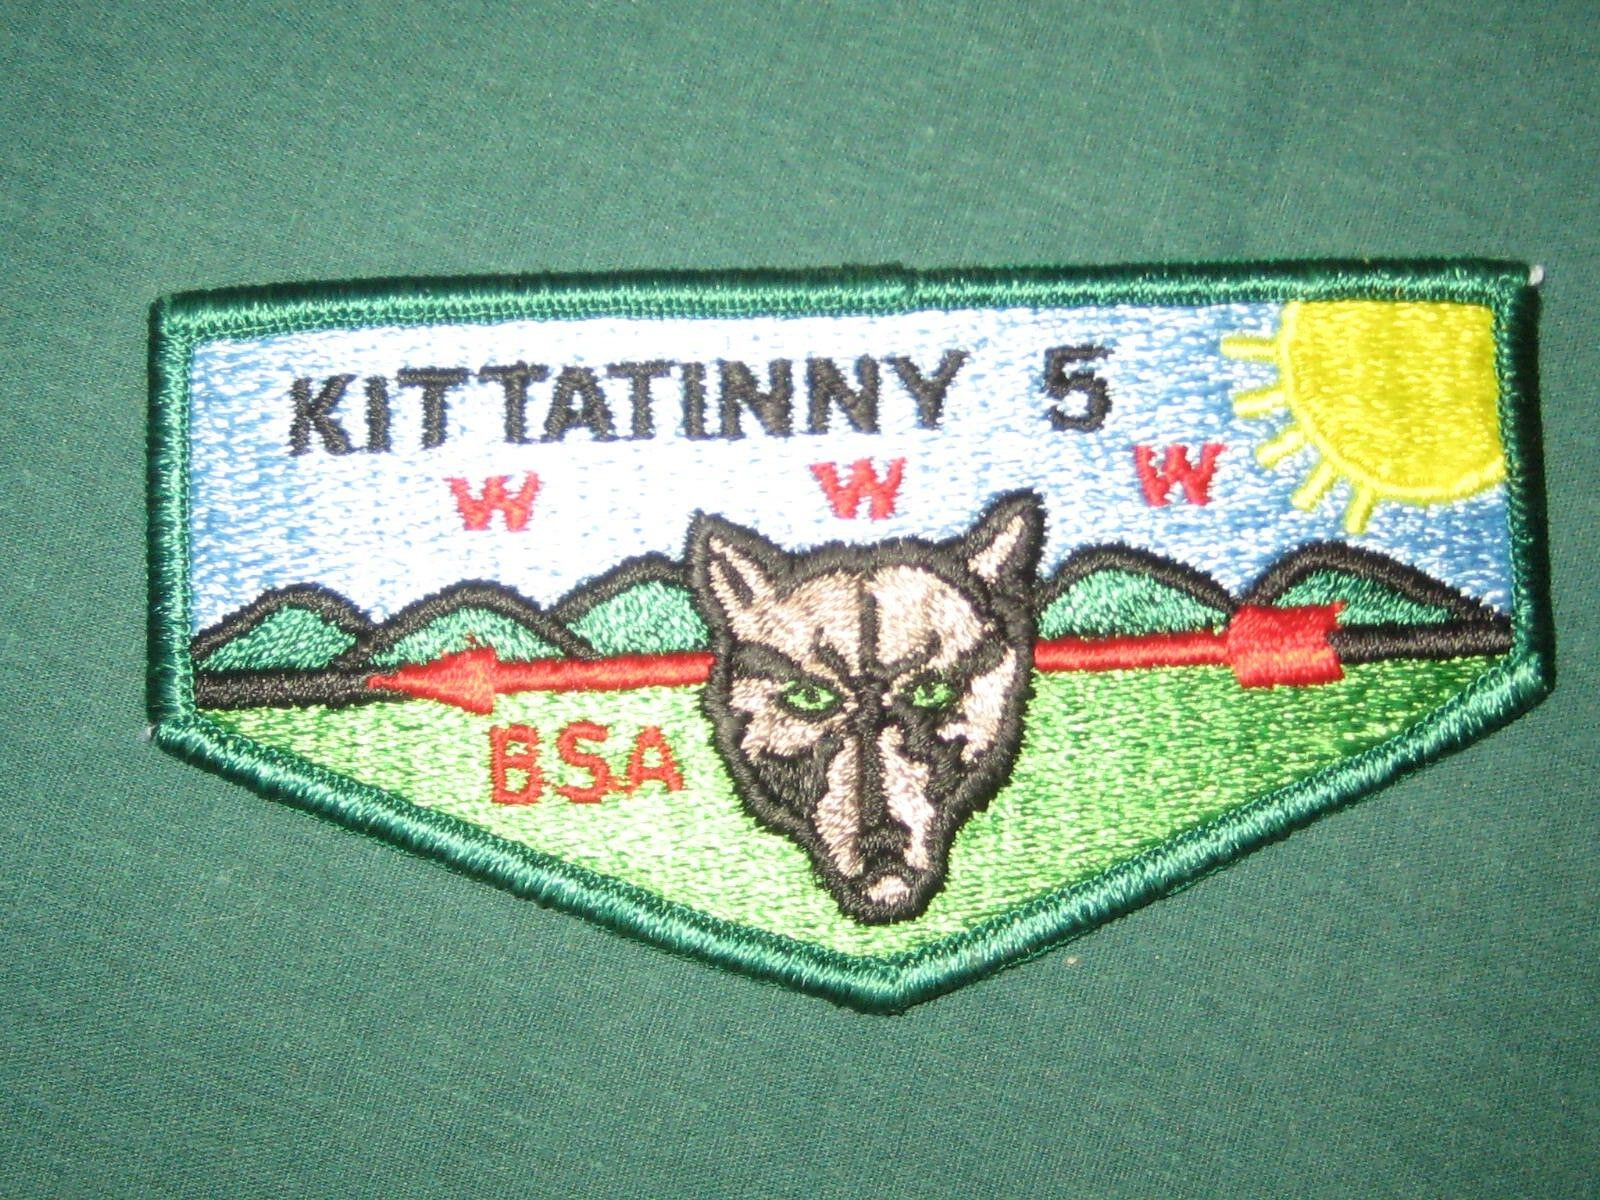 Kittatinny 5 s9e flap TP1